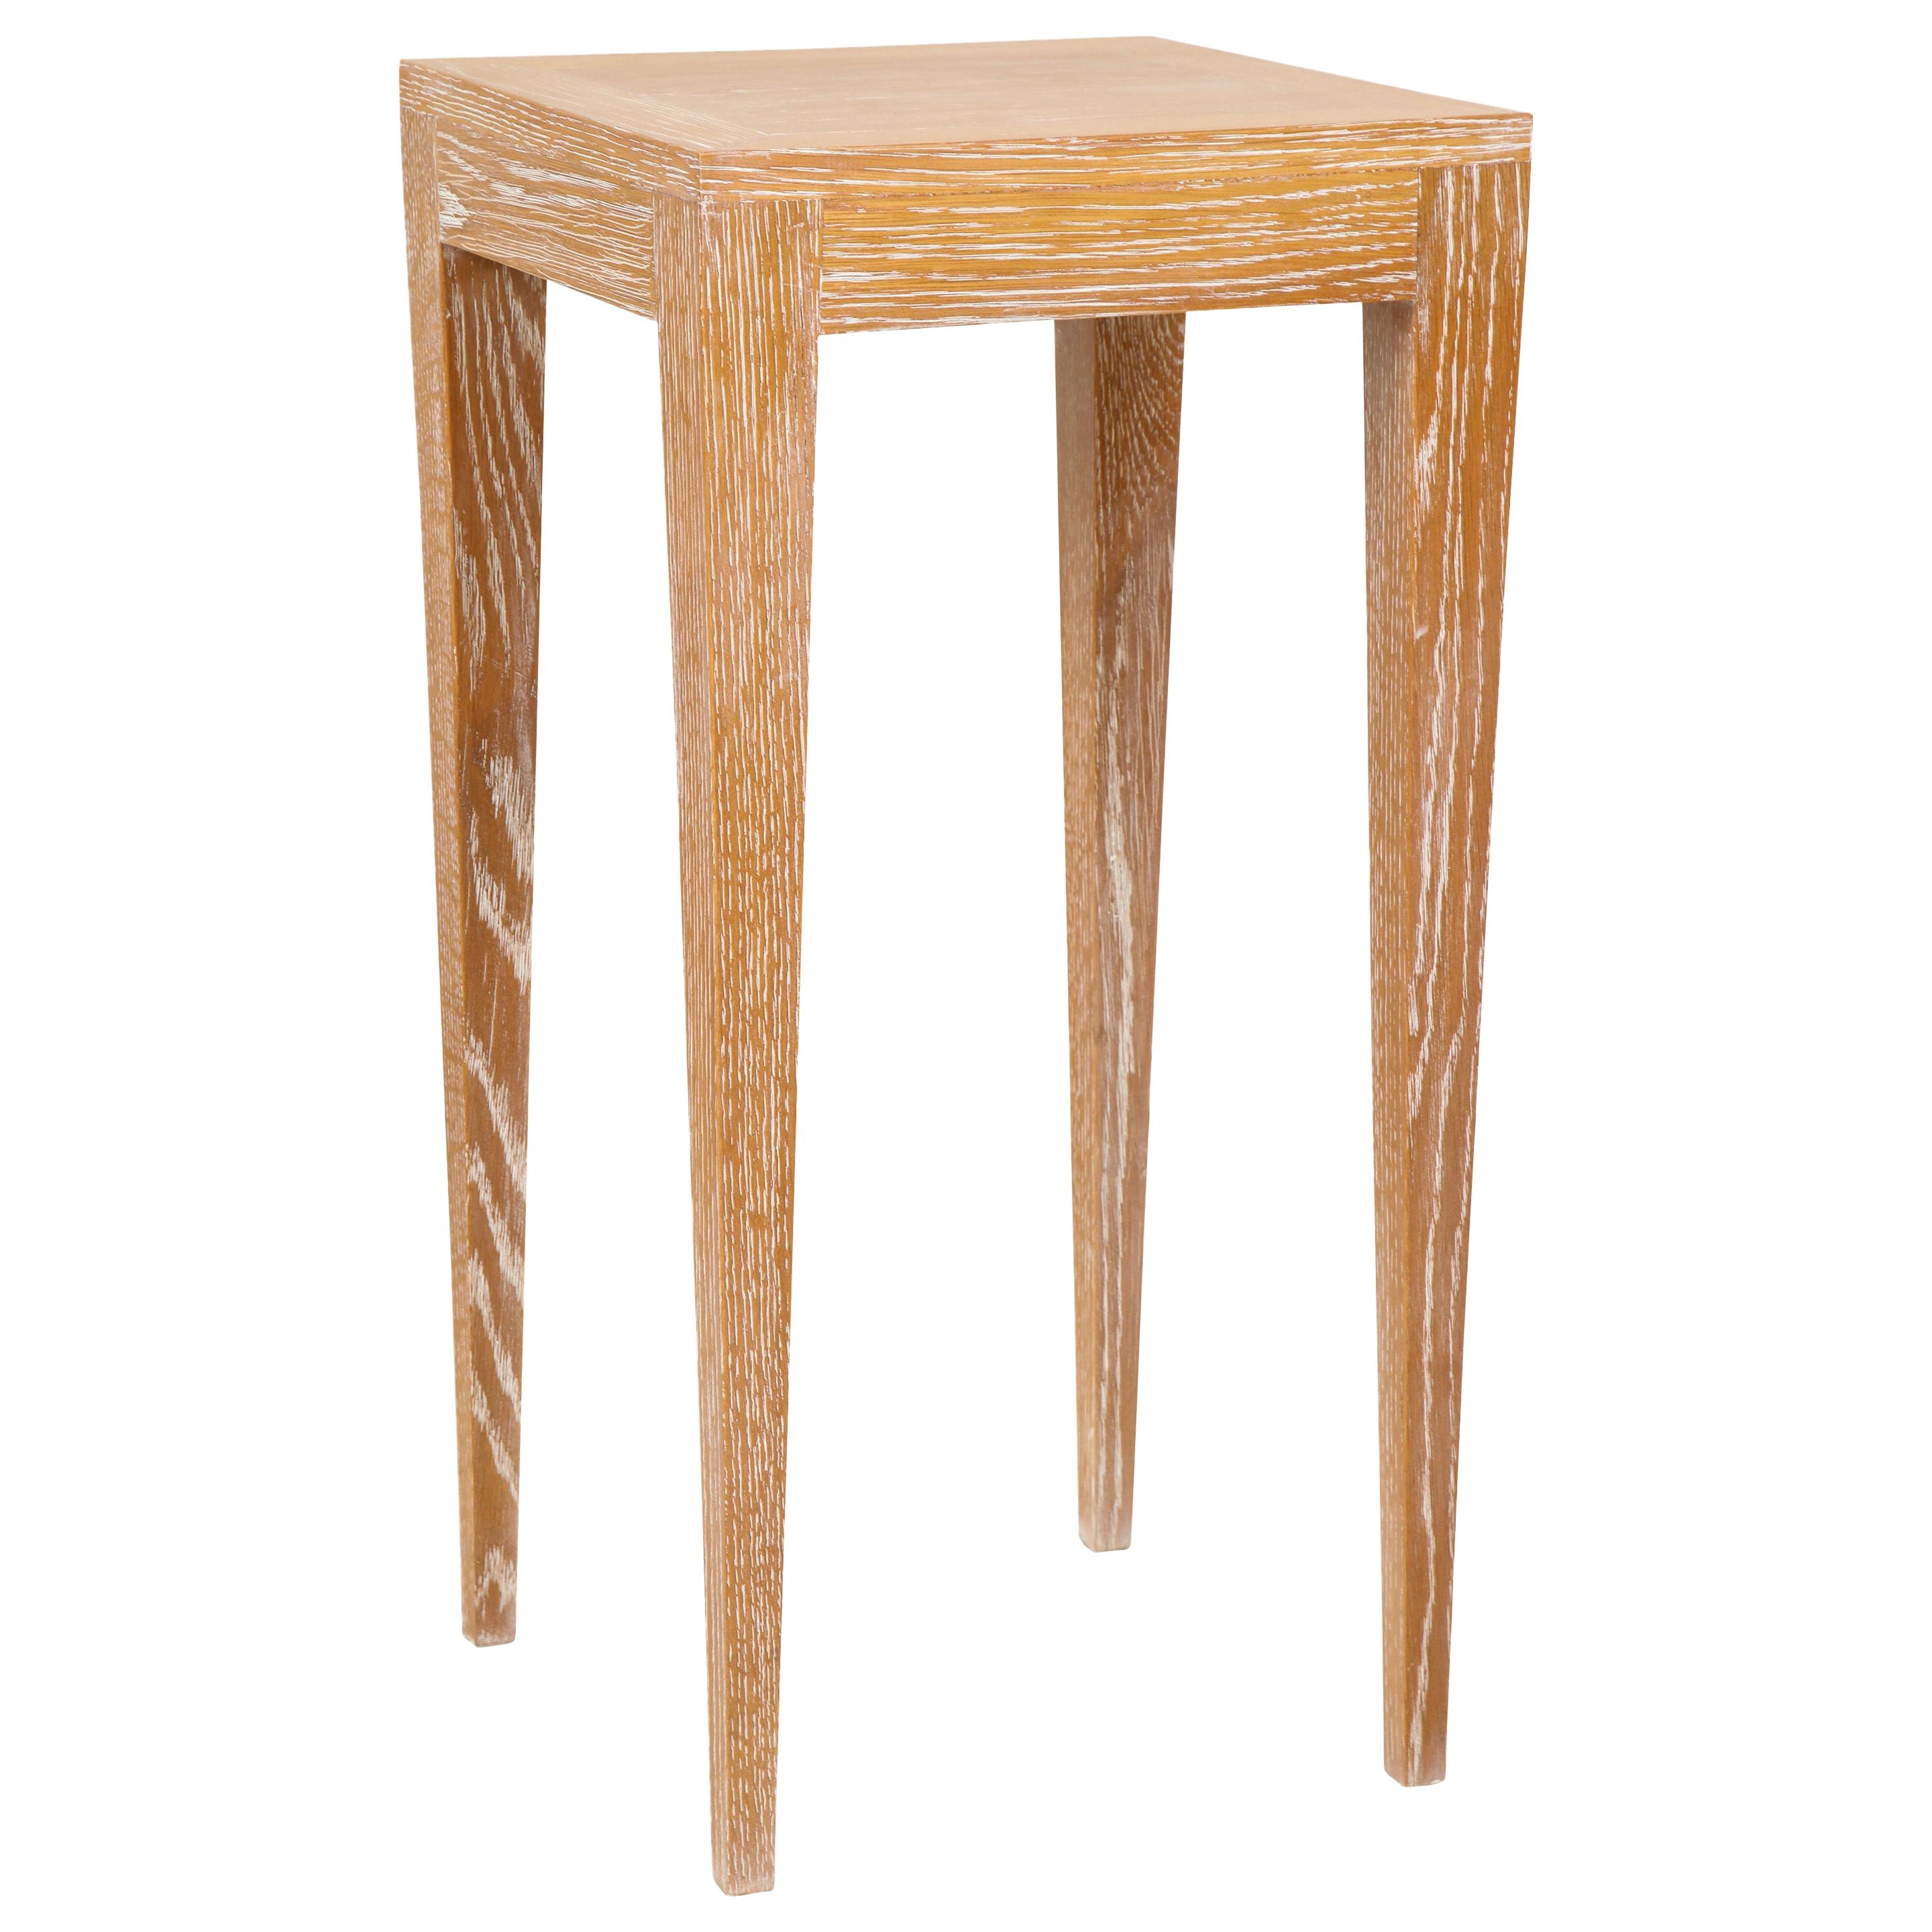 Maßgefertigter Tisch aus gekälktem Eichenholz auf konisch zulaufenden Beinen